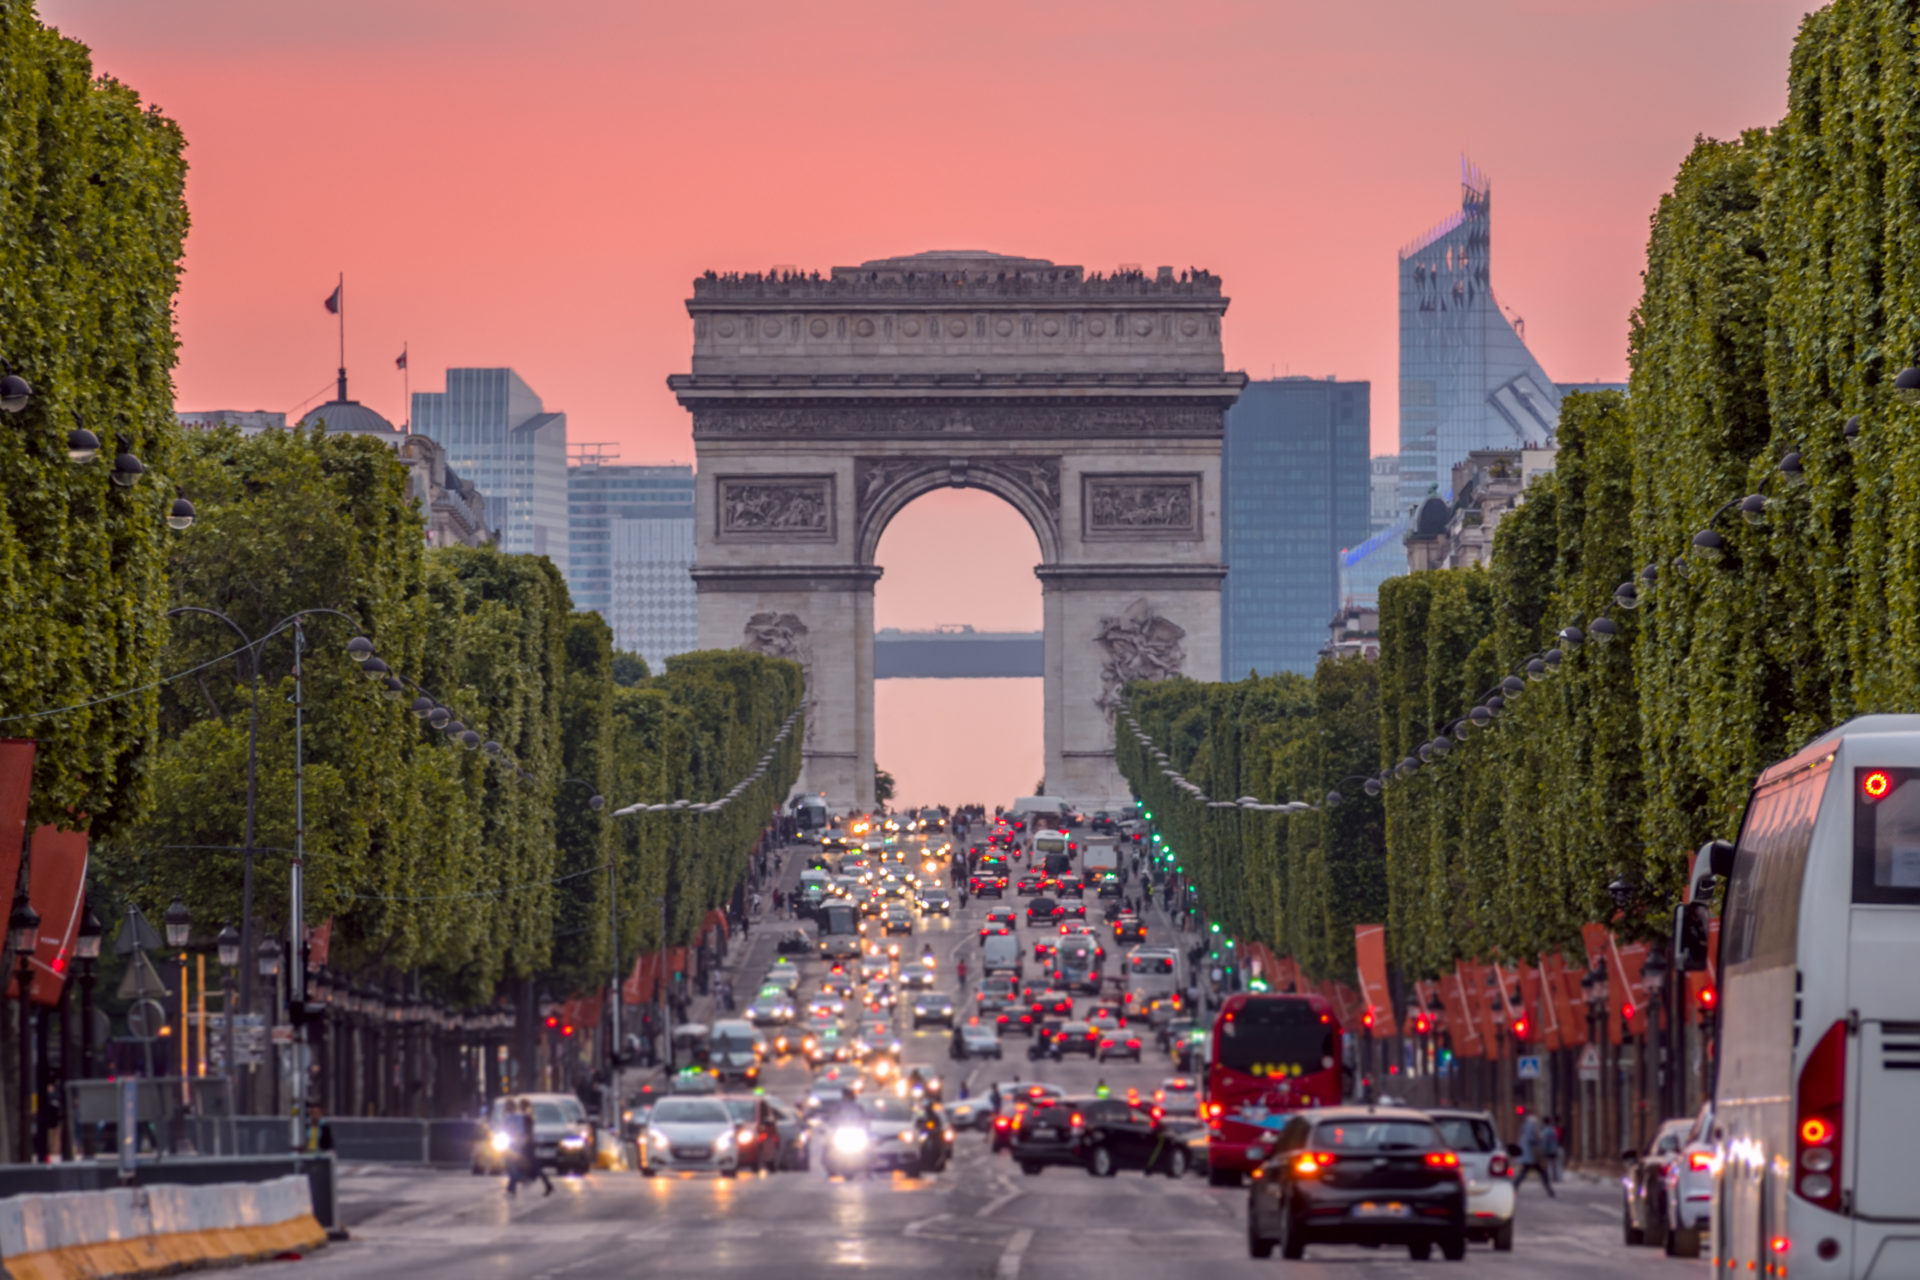 Visit Perspective Paris Delphine - Champs Elysees Arc de Triomphe Header